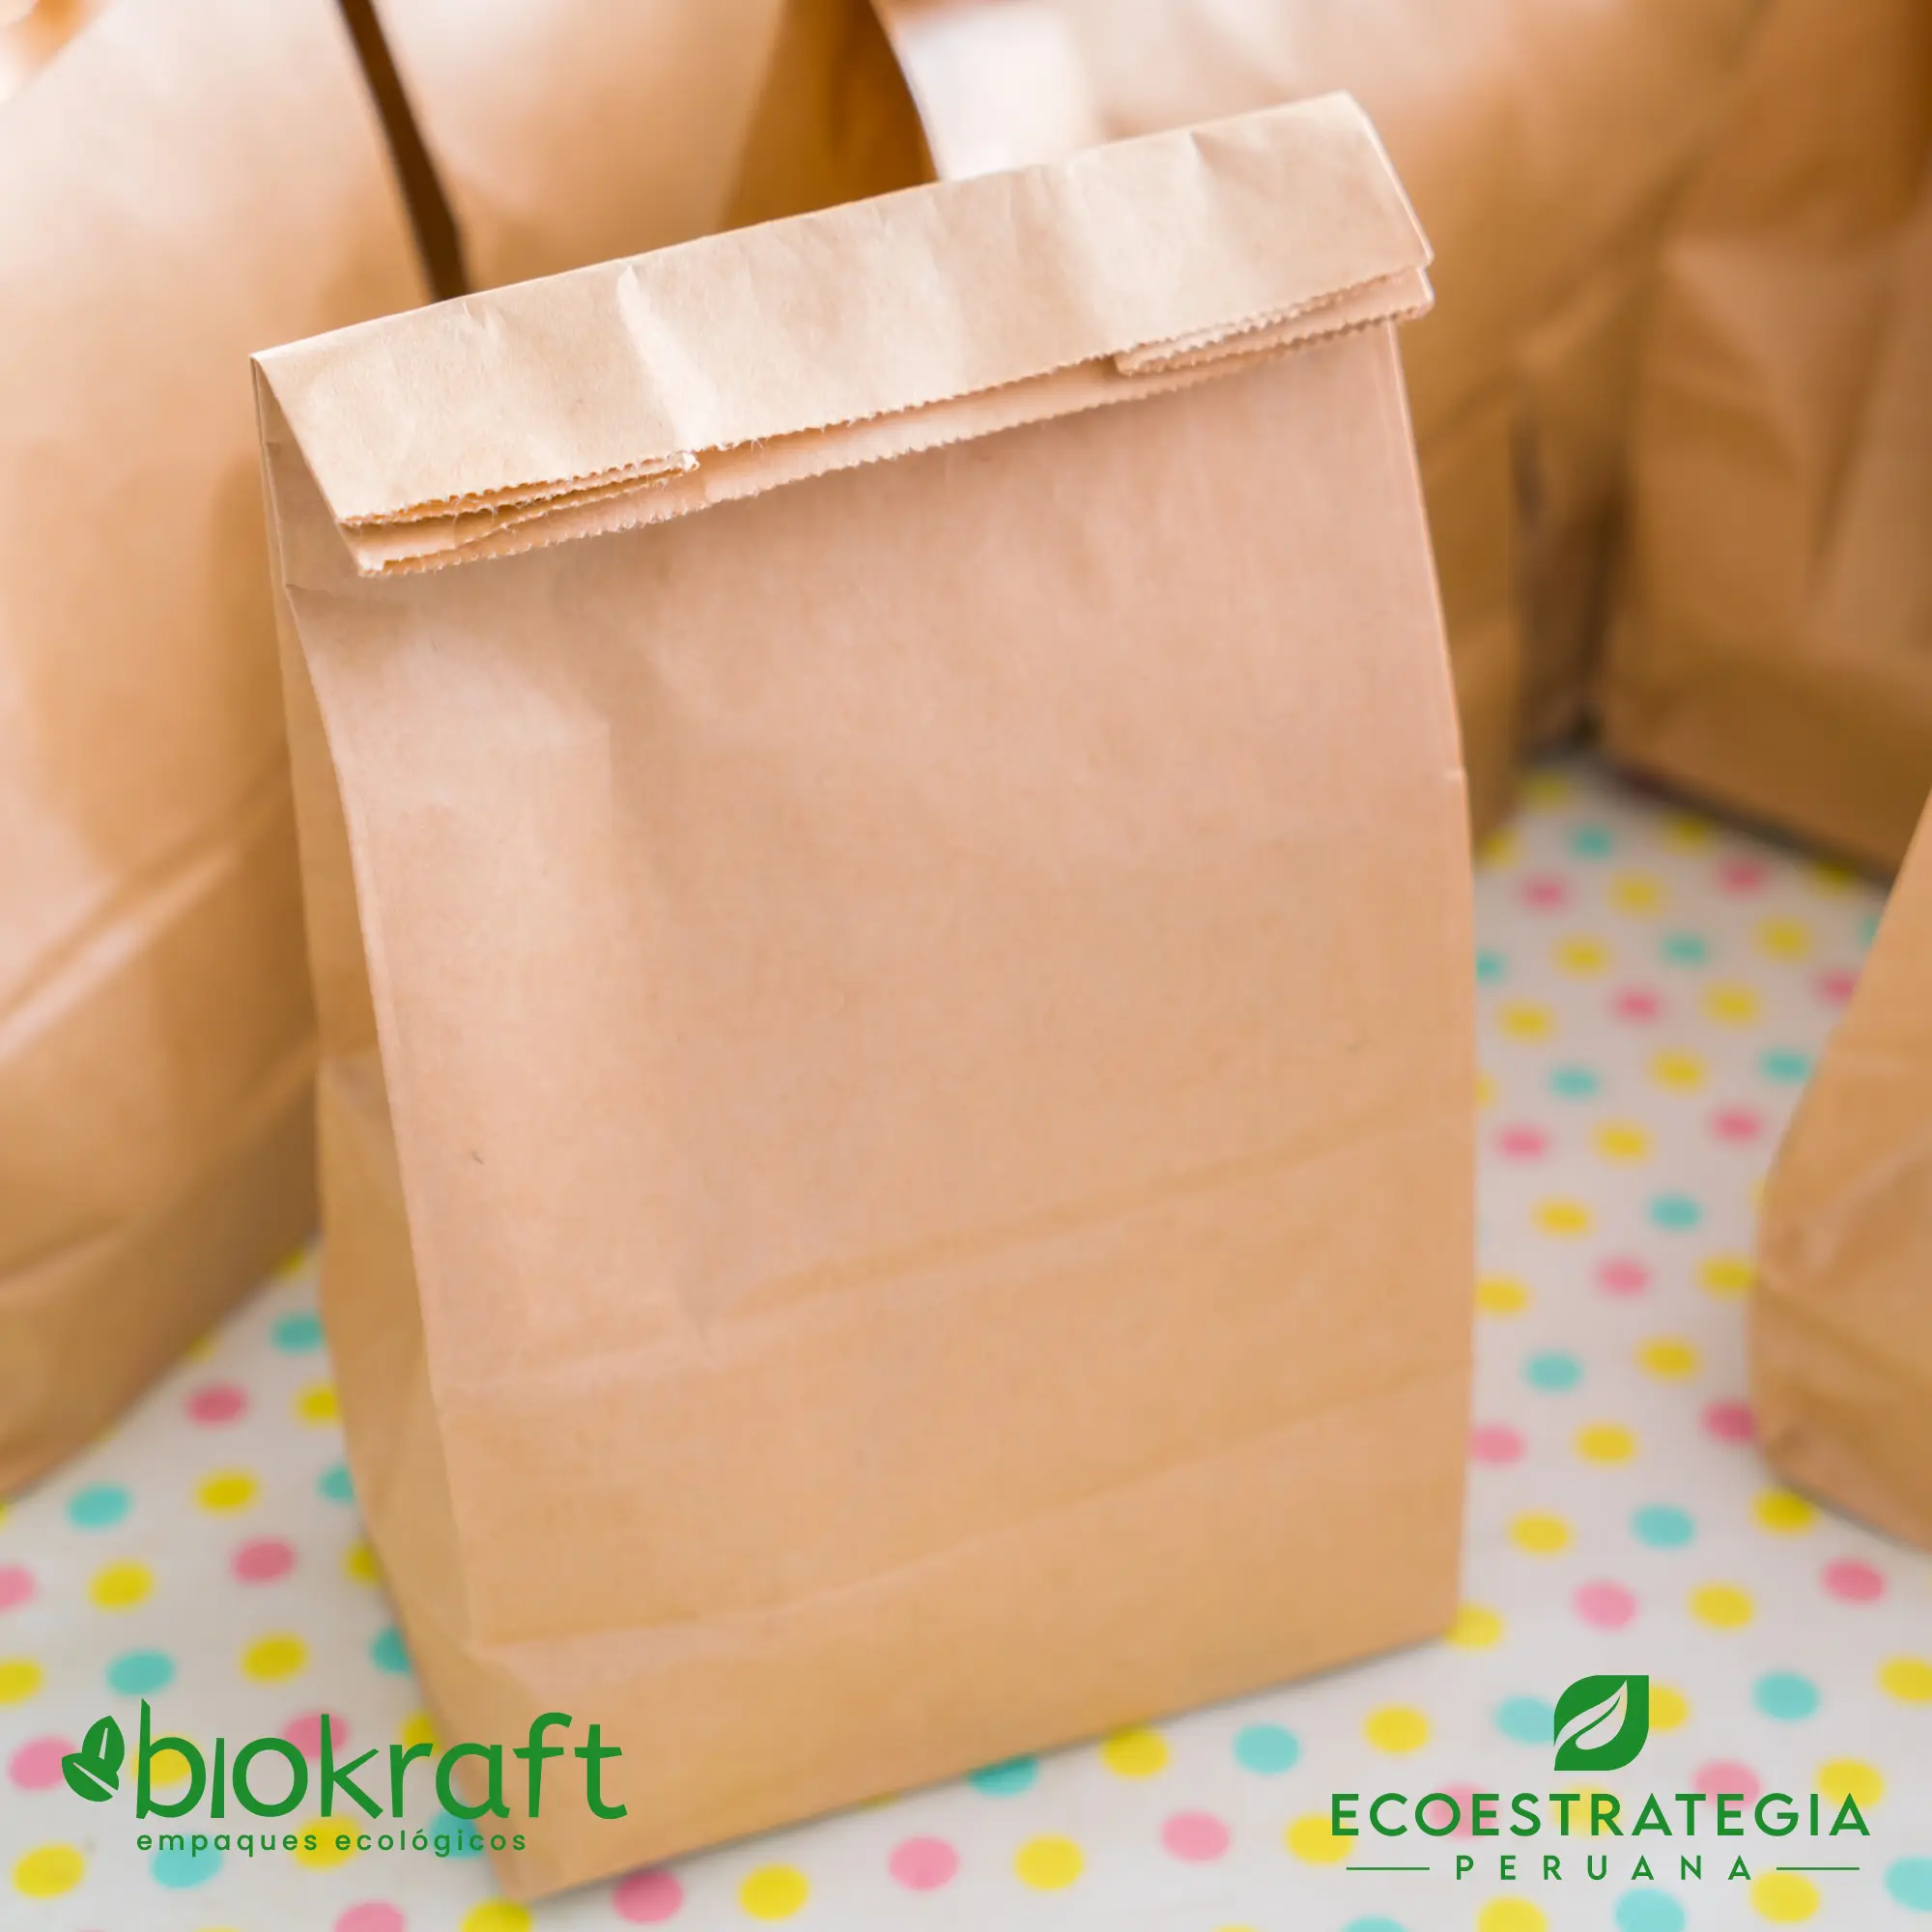 Esta bolsa de papel Kraft tiene un grosor de 80 gr y un peso de 41gr. Bolsa biodegradable de excelente gramaje y medida, ideal para comidas y productos ligeros. Cotiza ahora tus bolsas Kraft número 30